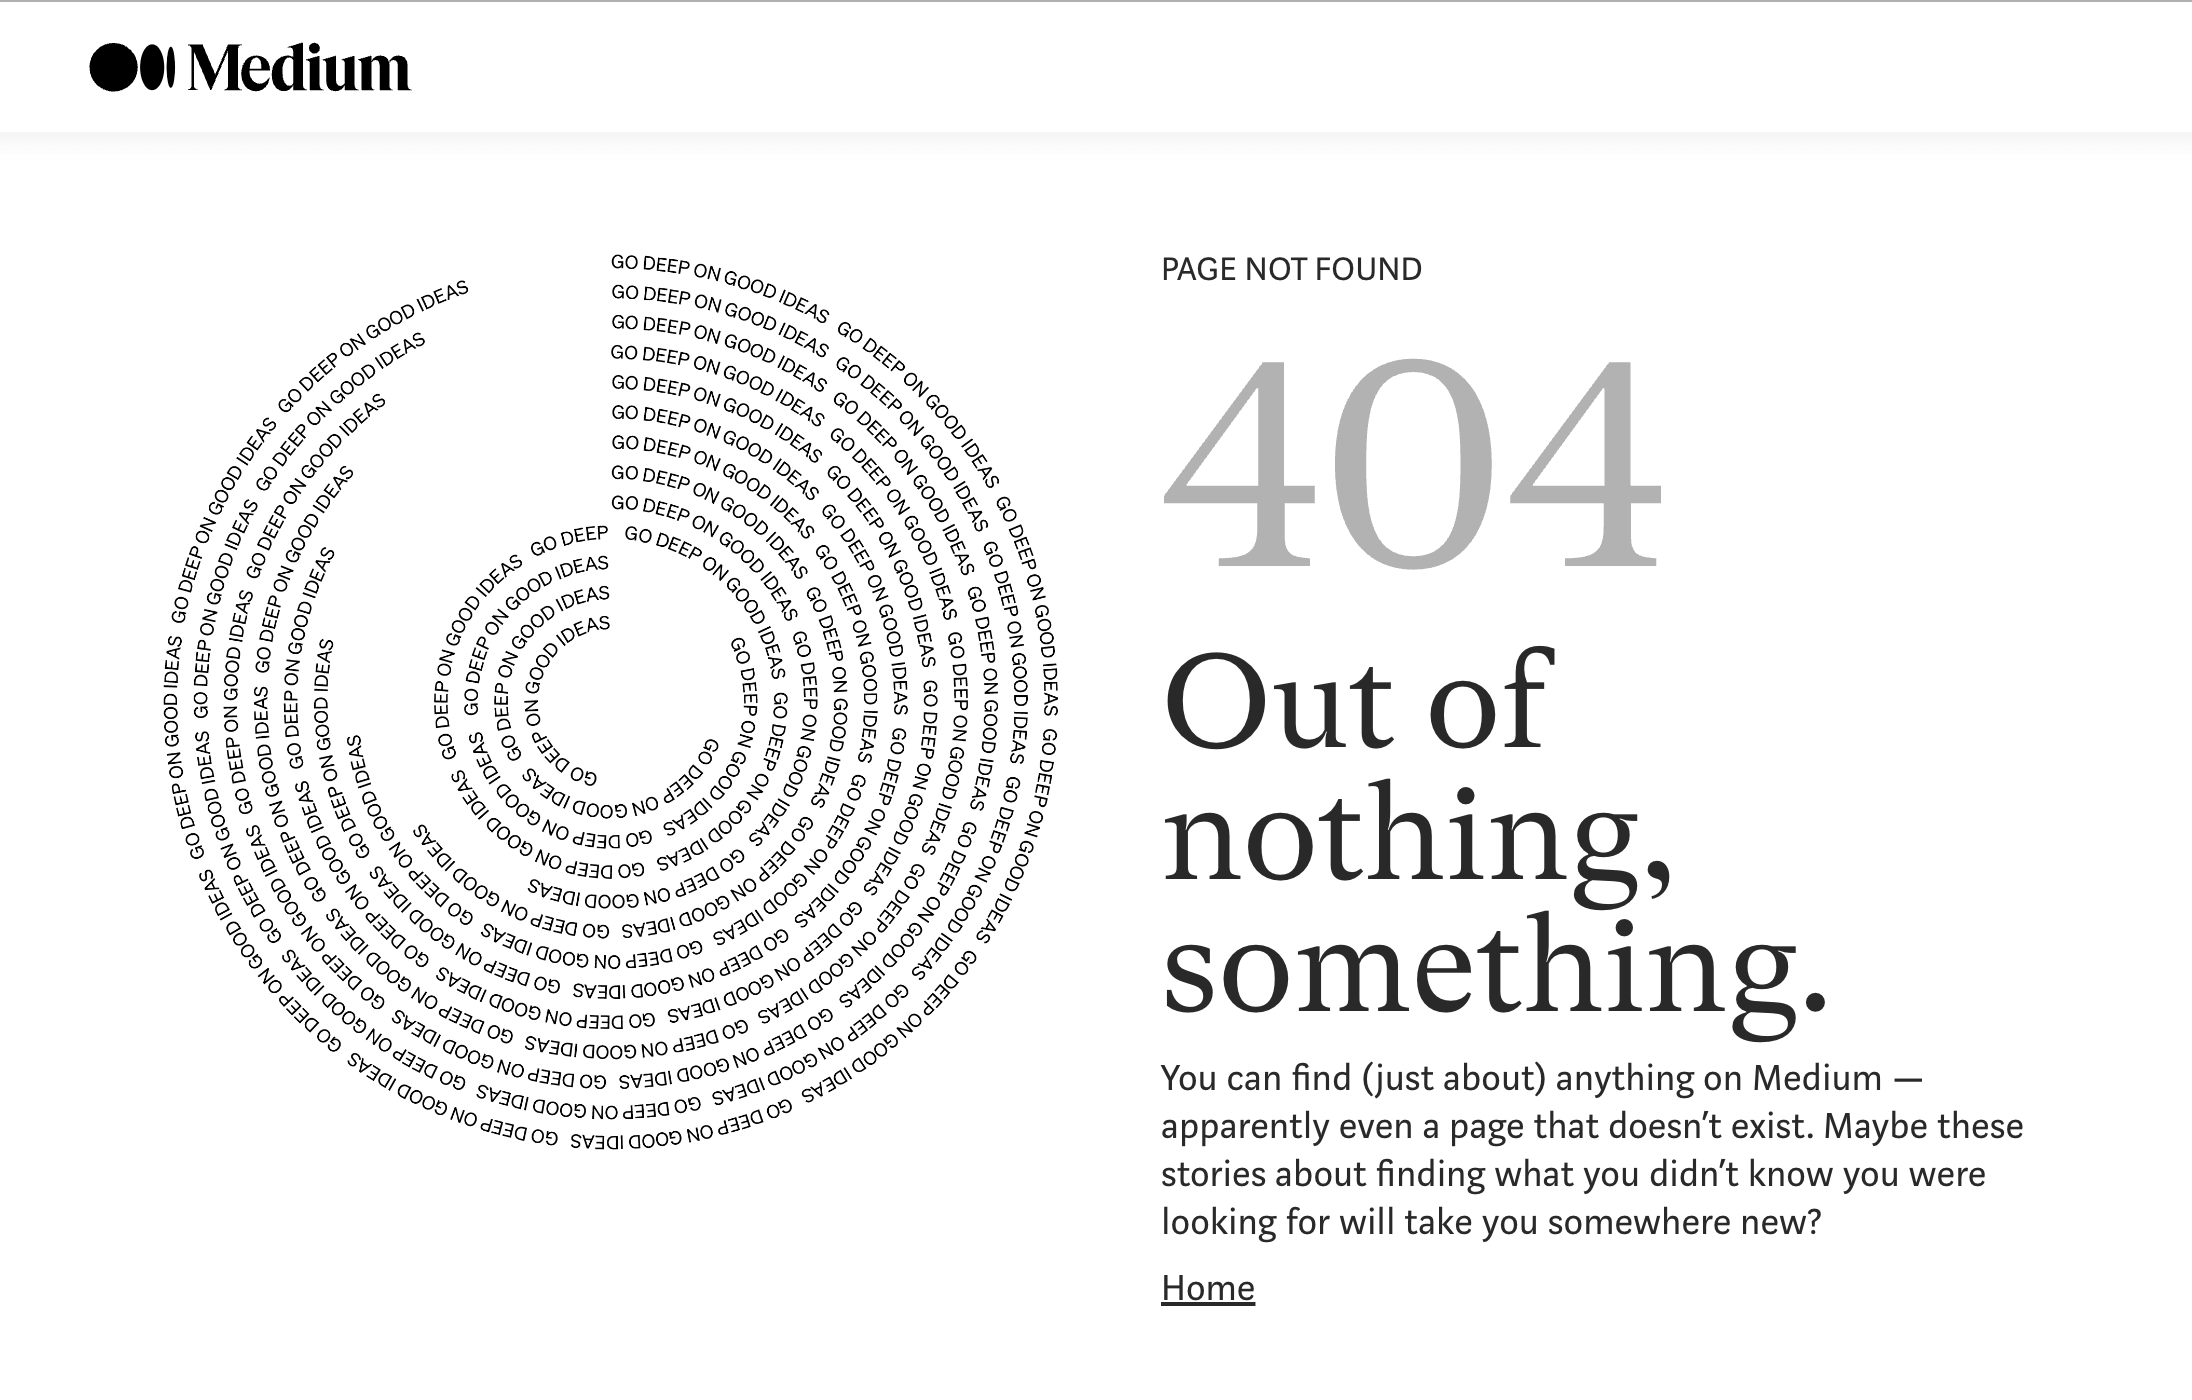 Medium 404 page